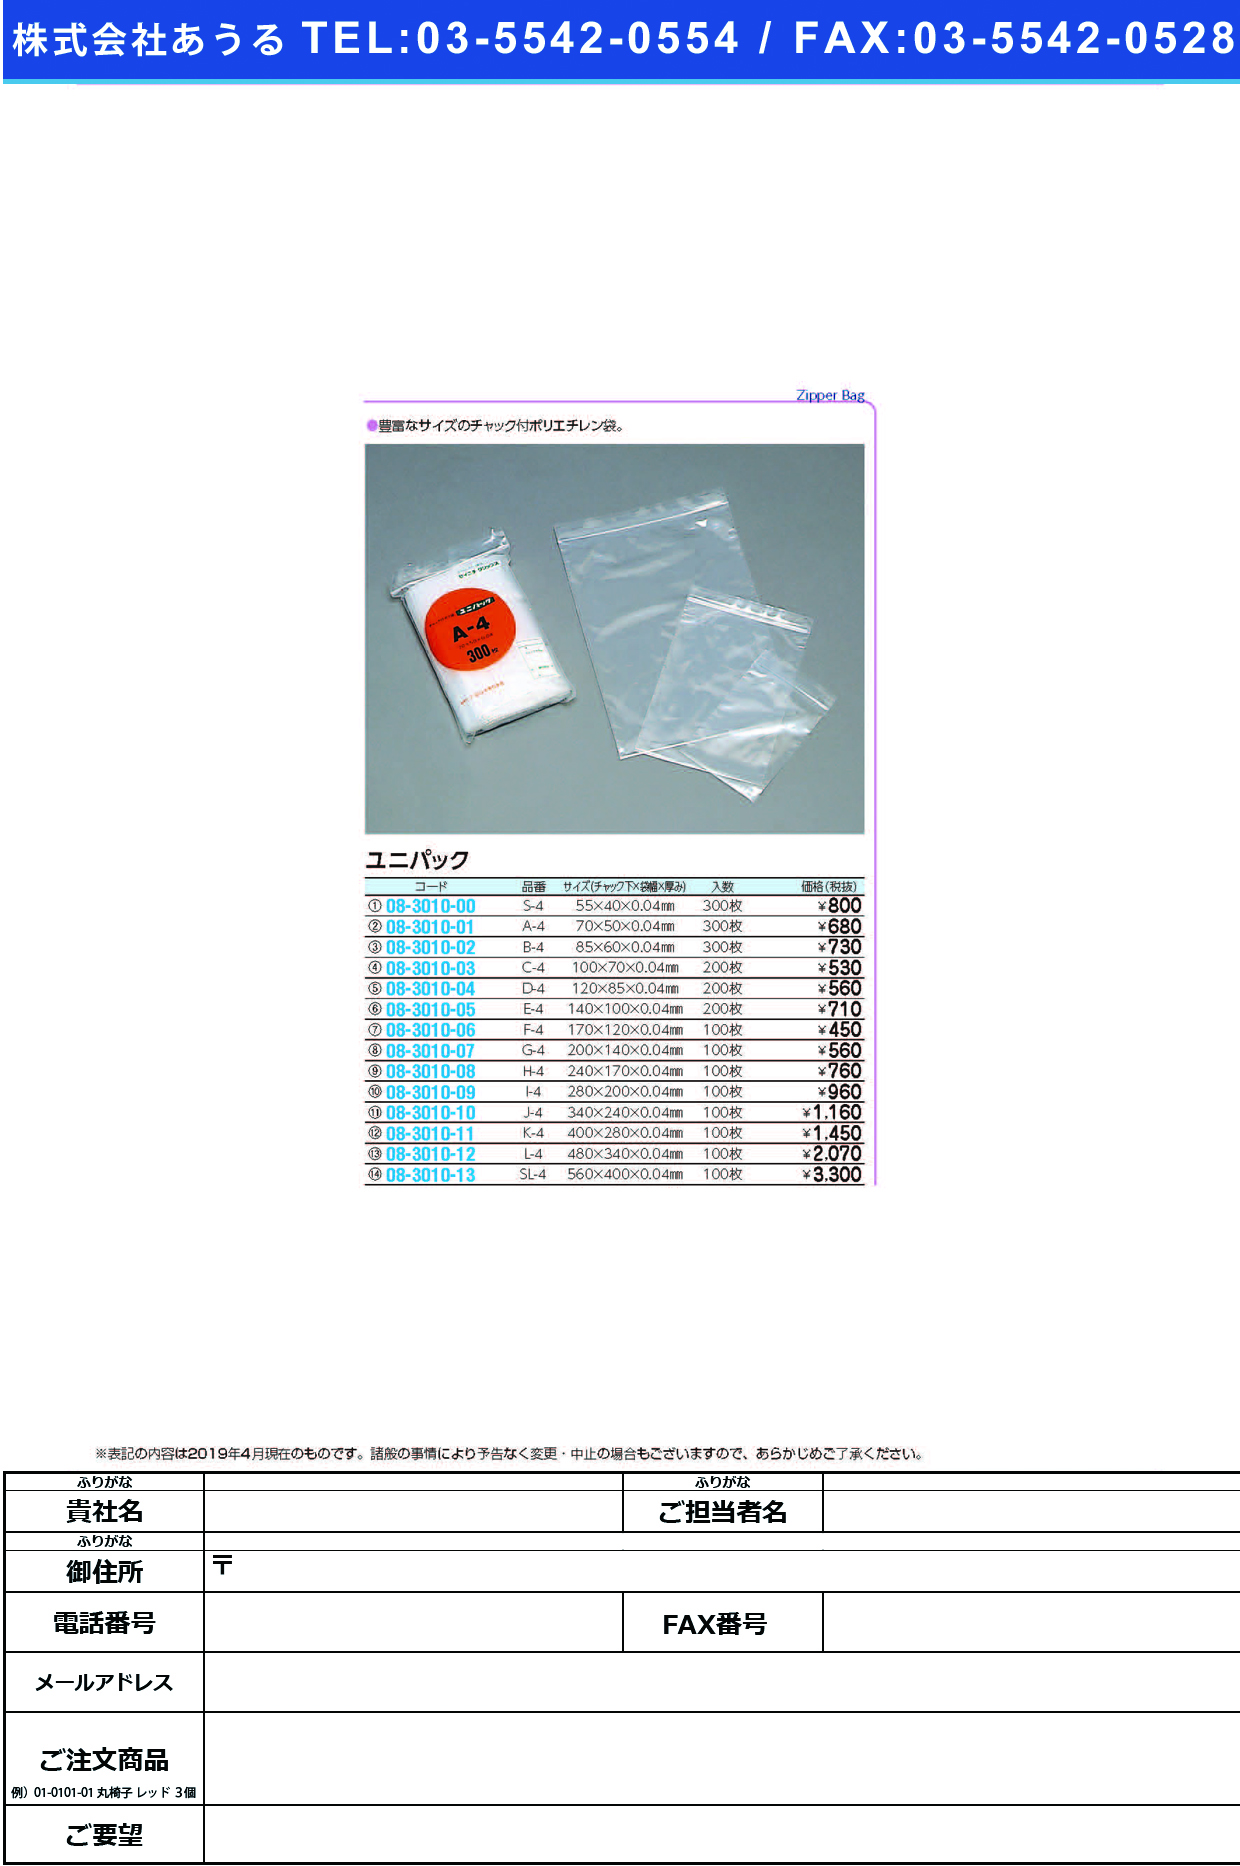 (08-3010-06)ユニパック F-4(170X120MM)100ﾏｲ ﾕﾆﾊﾟｯｸ【1袋単位】【2019年カタログ商品】